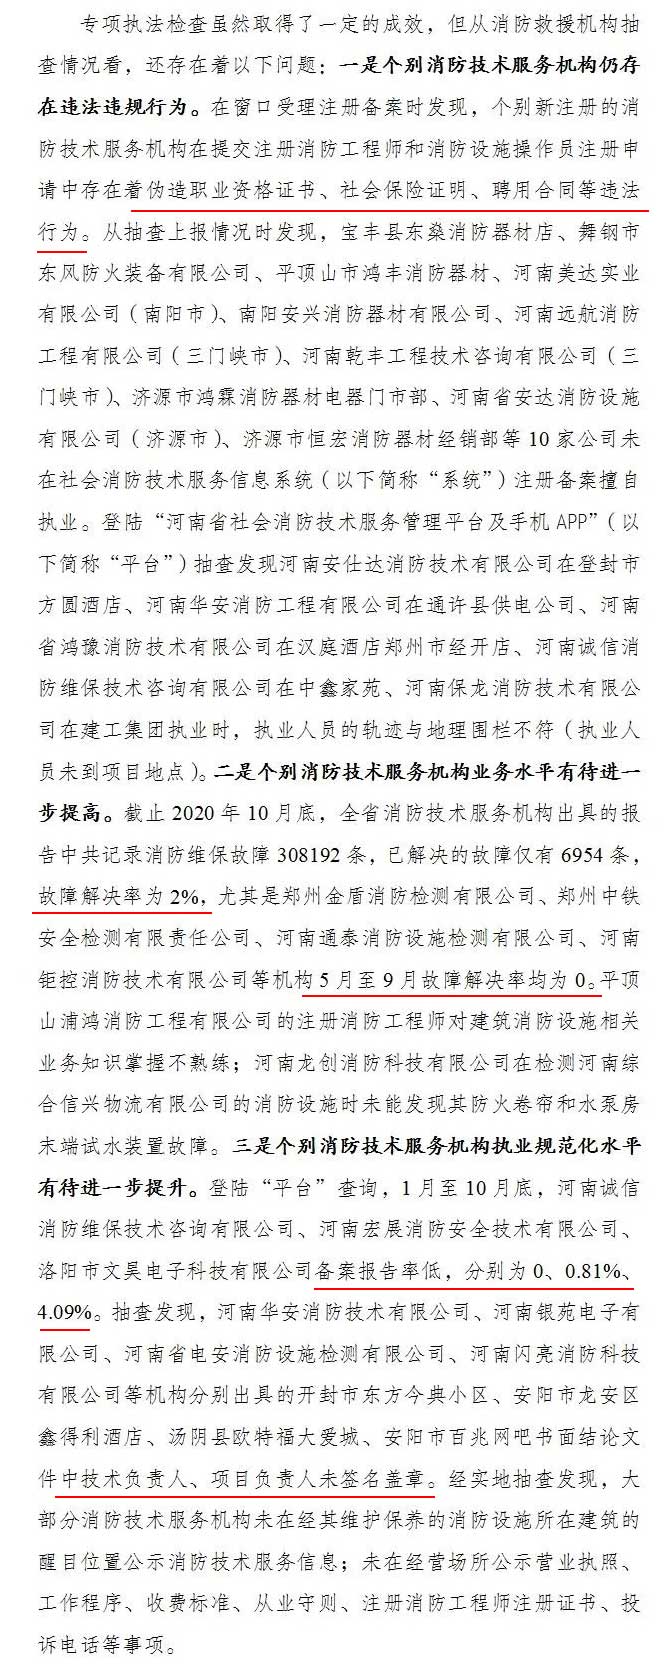 河南省消防救援总队关于全省消防技术服务机构专项执法检查情况的通报